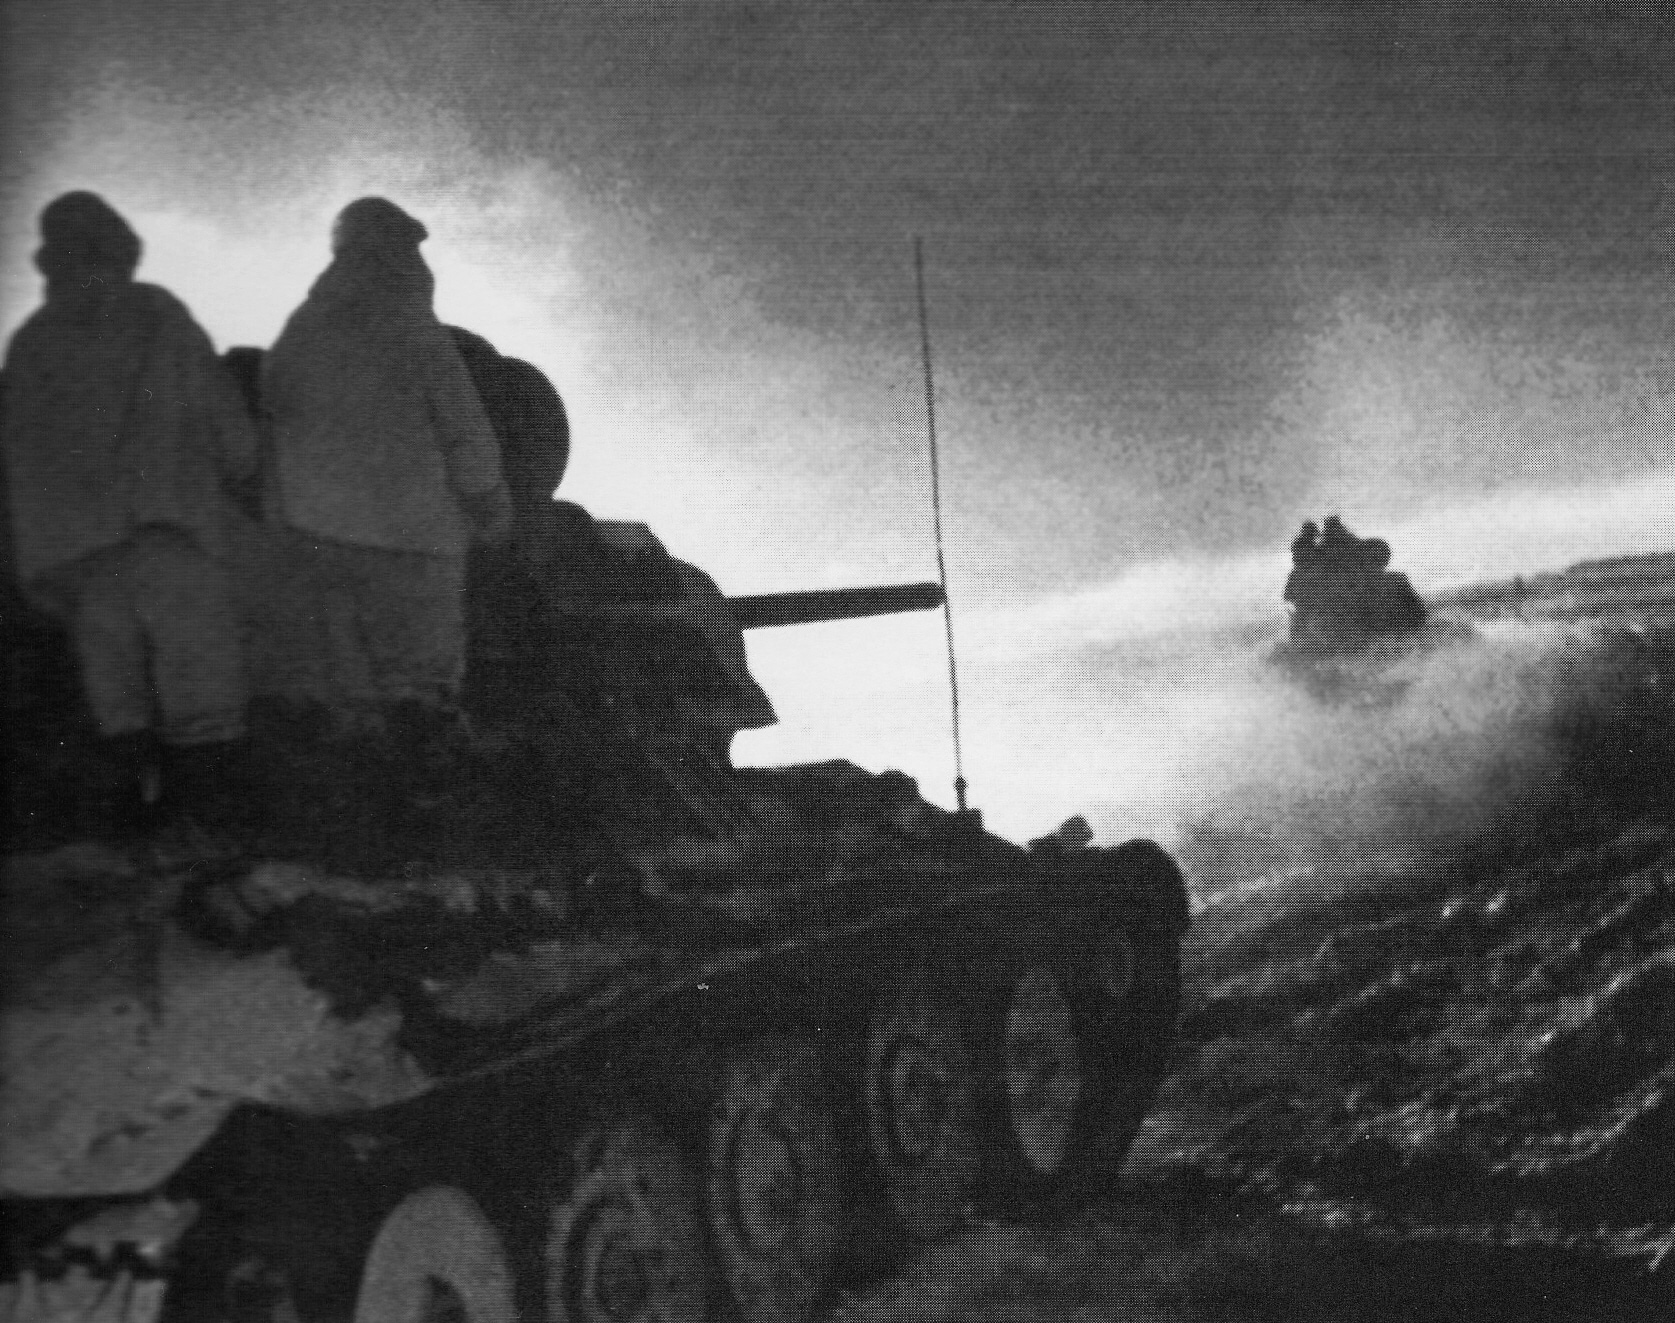 Colonne corazzate sovietiche nella steppa innevata